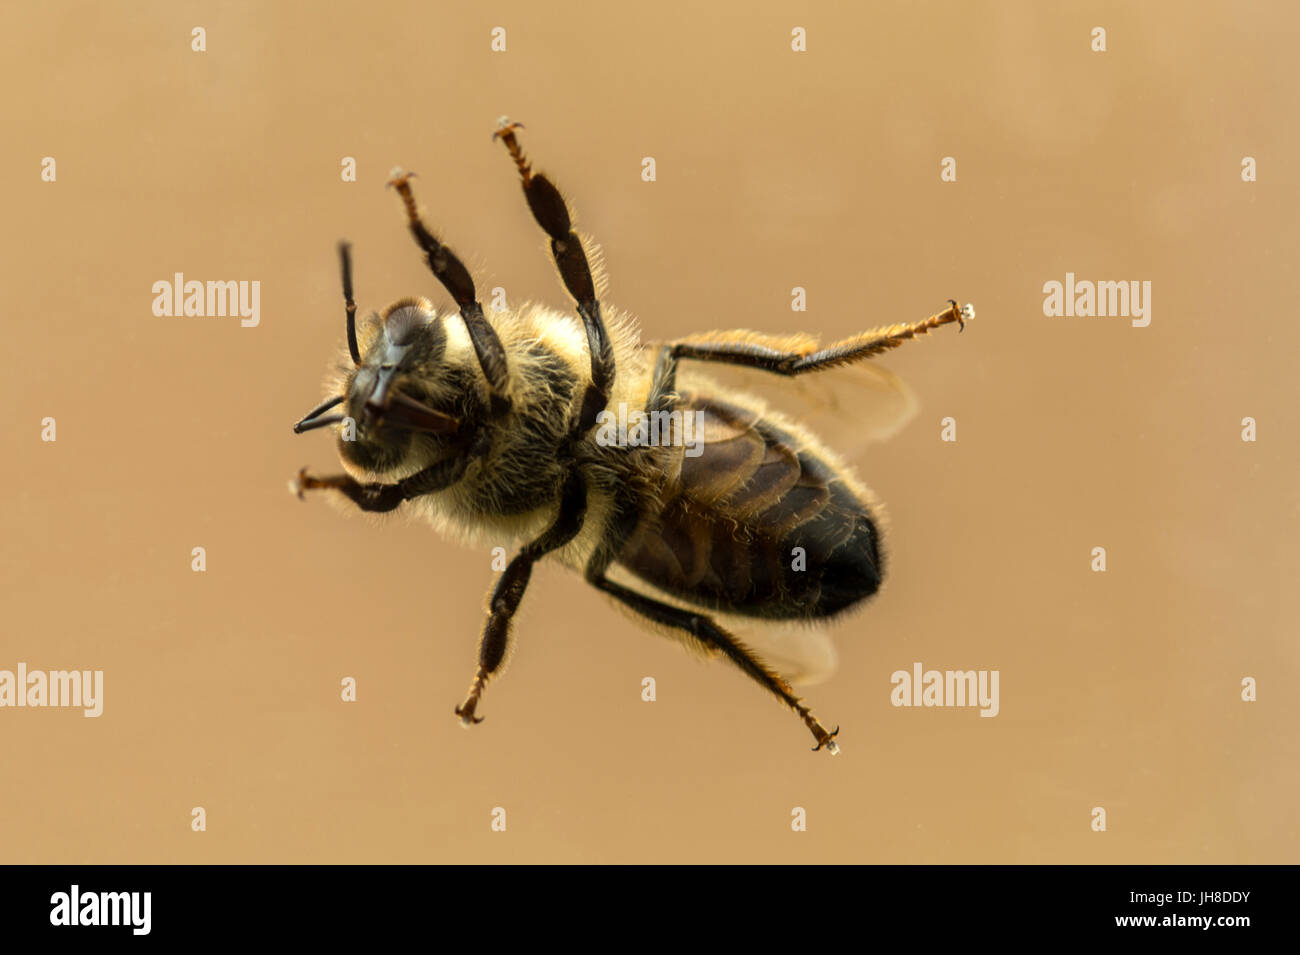 La seule abeille à miel (Apis) représenté passant par la transparence du verre, isolé contre l'arrière-plan Banque D'Images